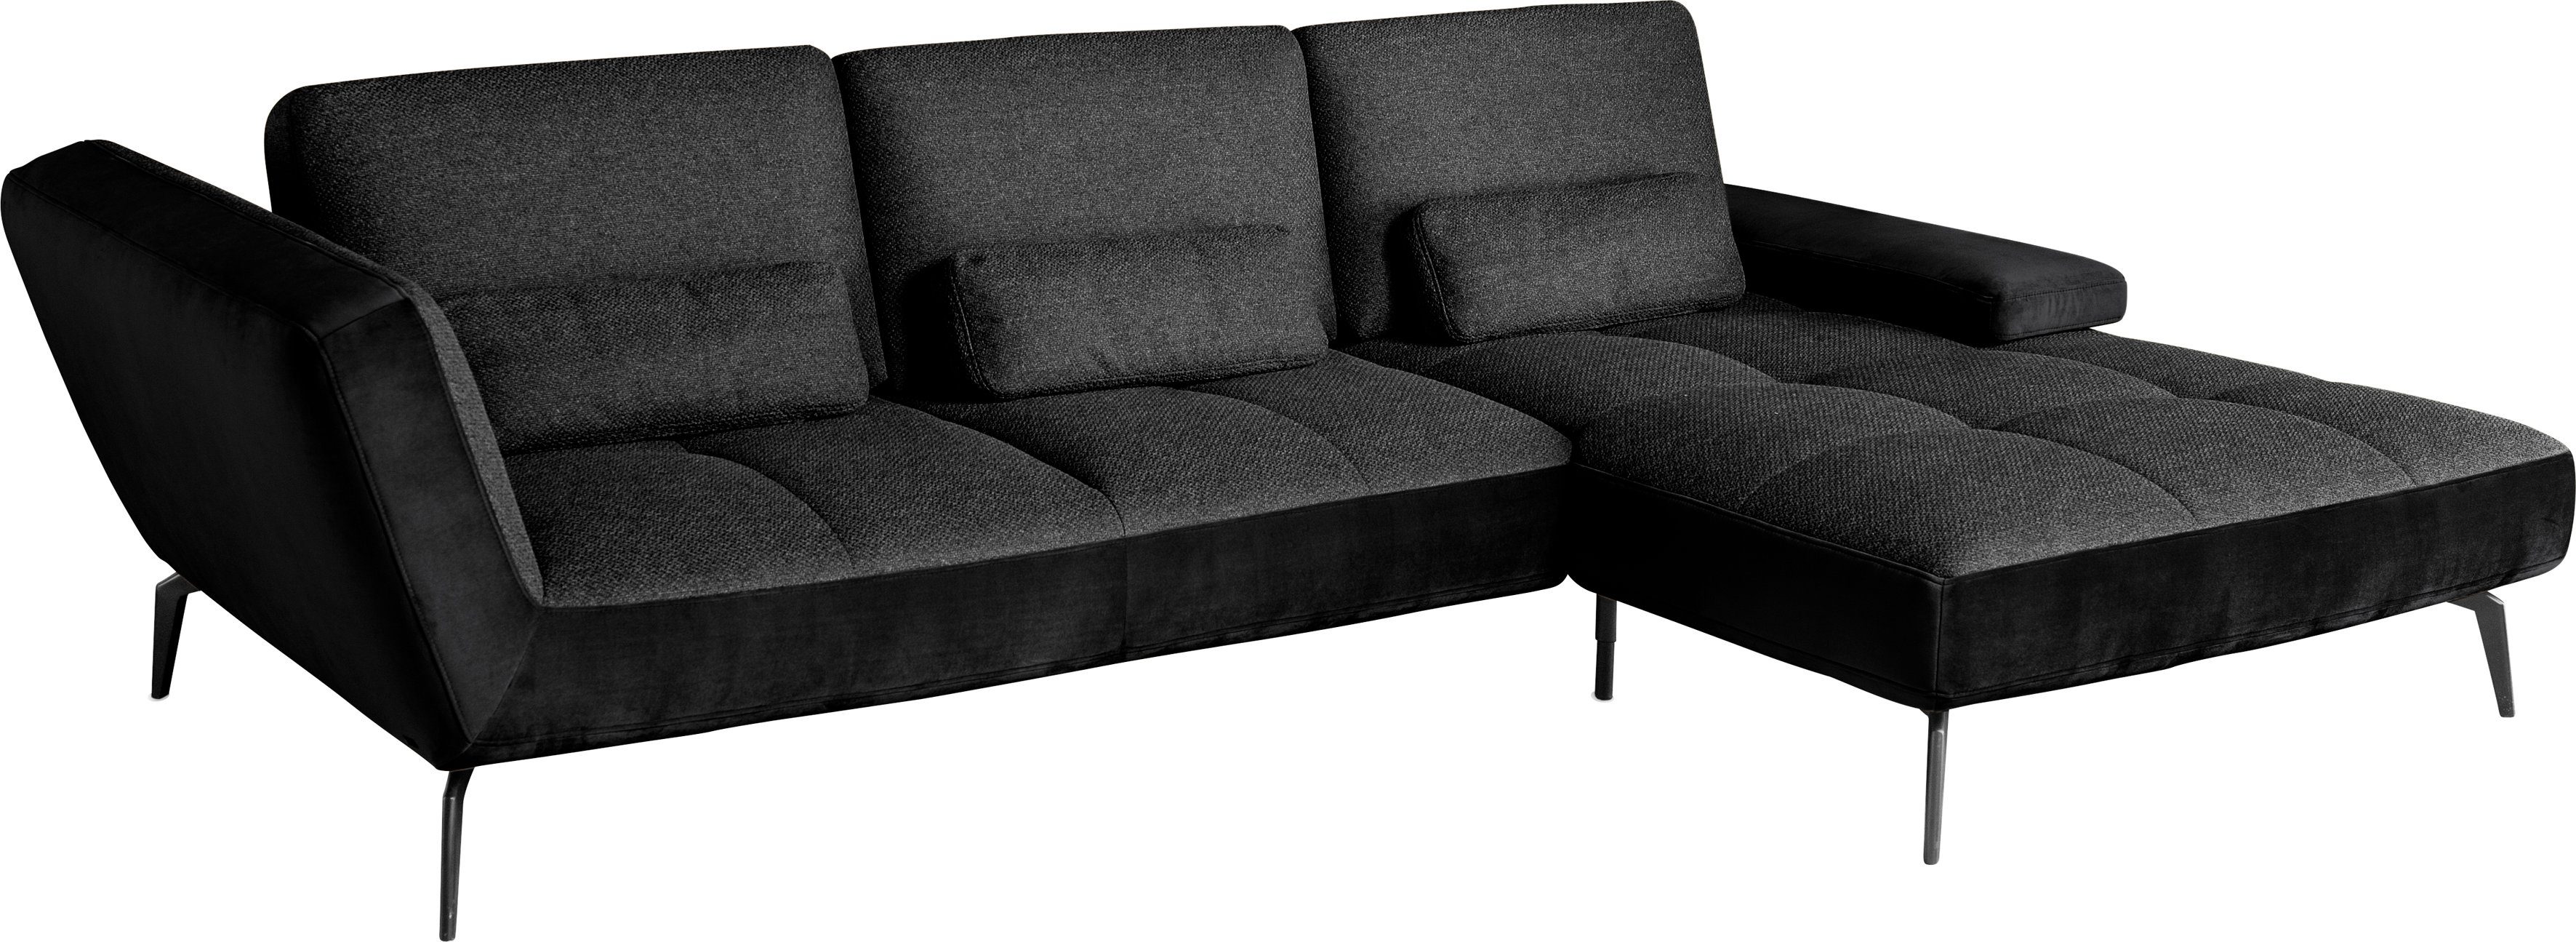 Nierenkissen Sitztiefenverstellung set 4300, Ecksofa inklusive SO und Musterring by charcoal169/schwarz100 one